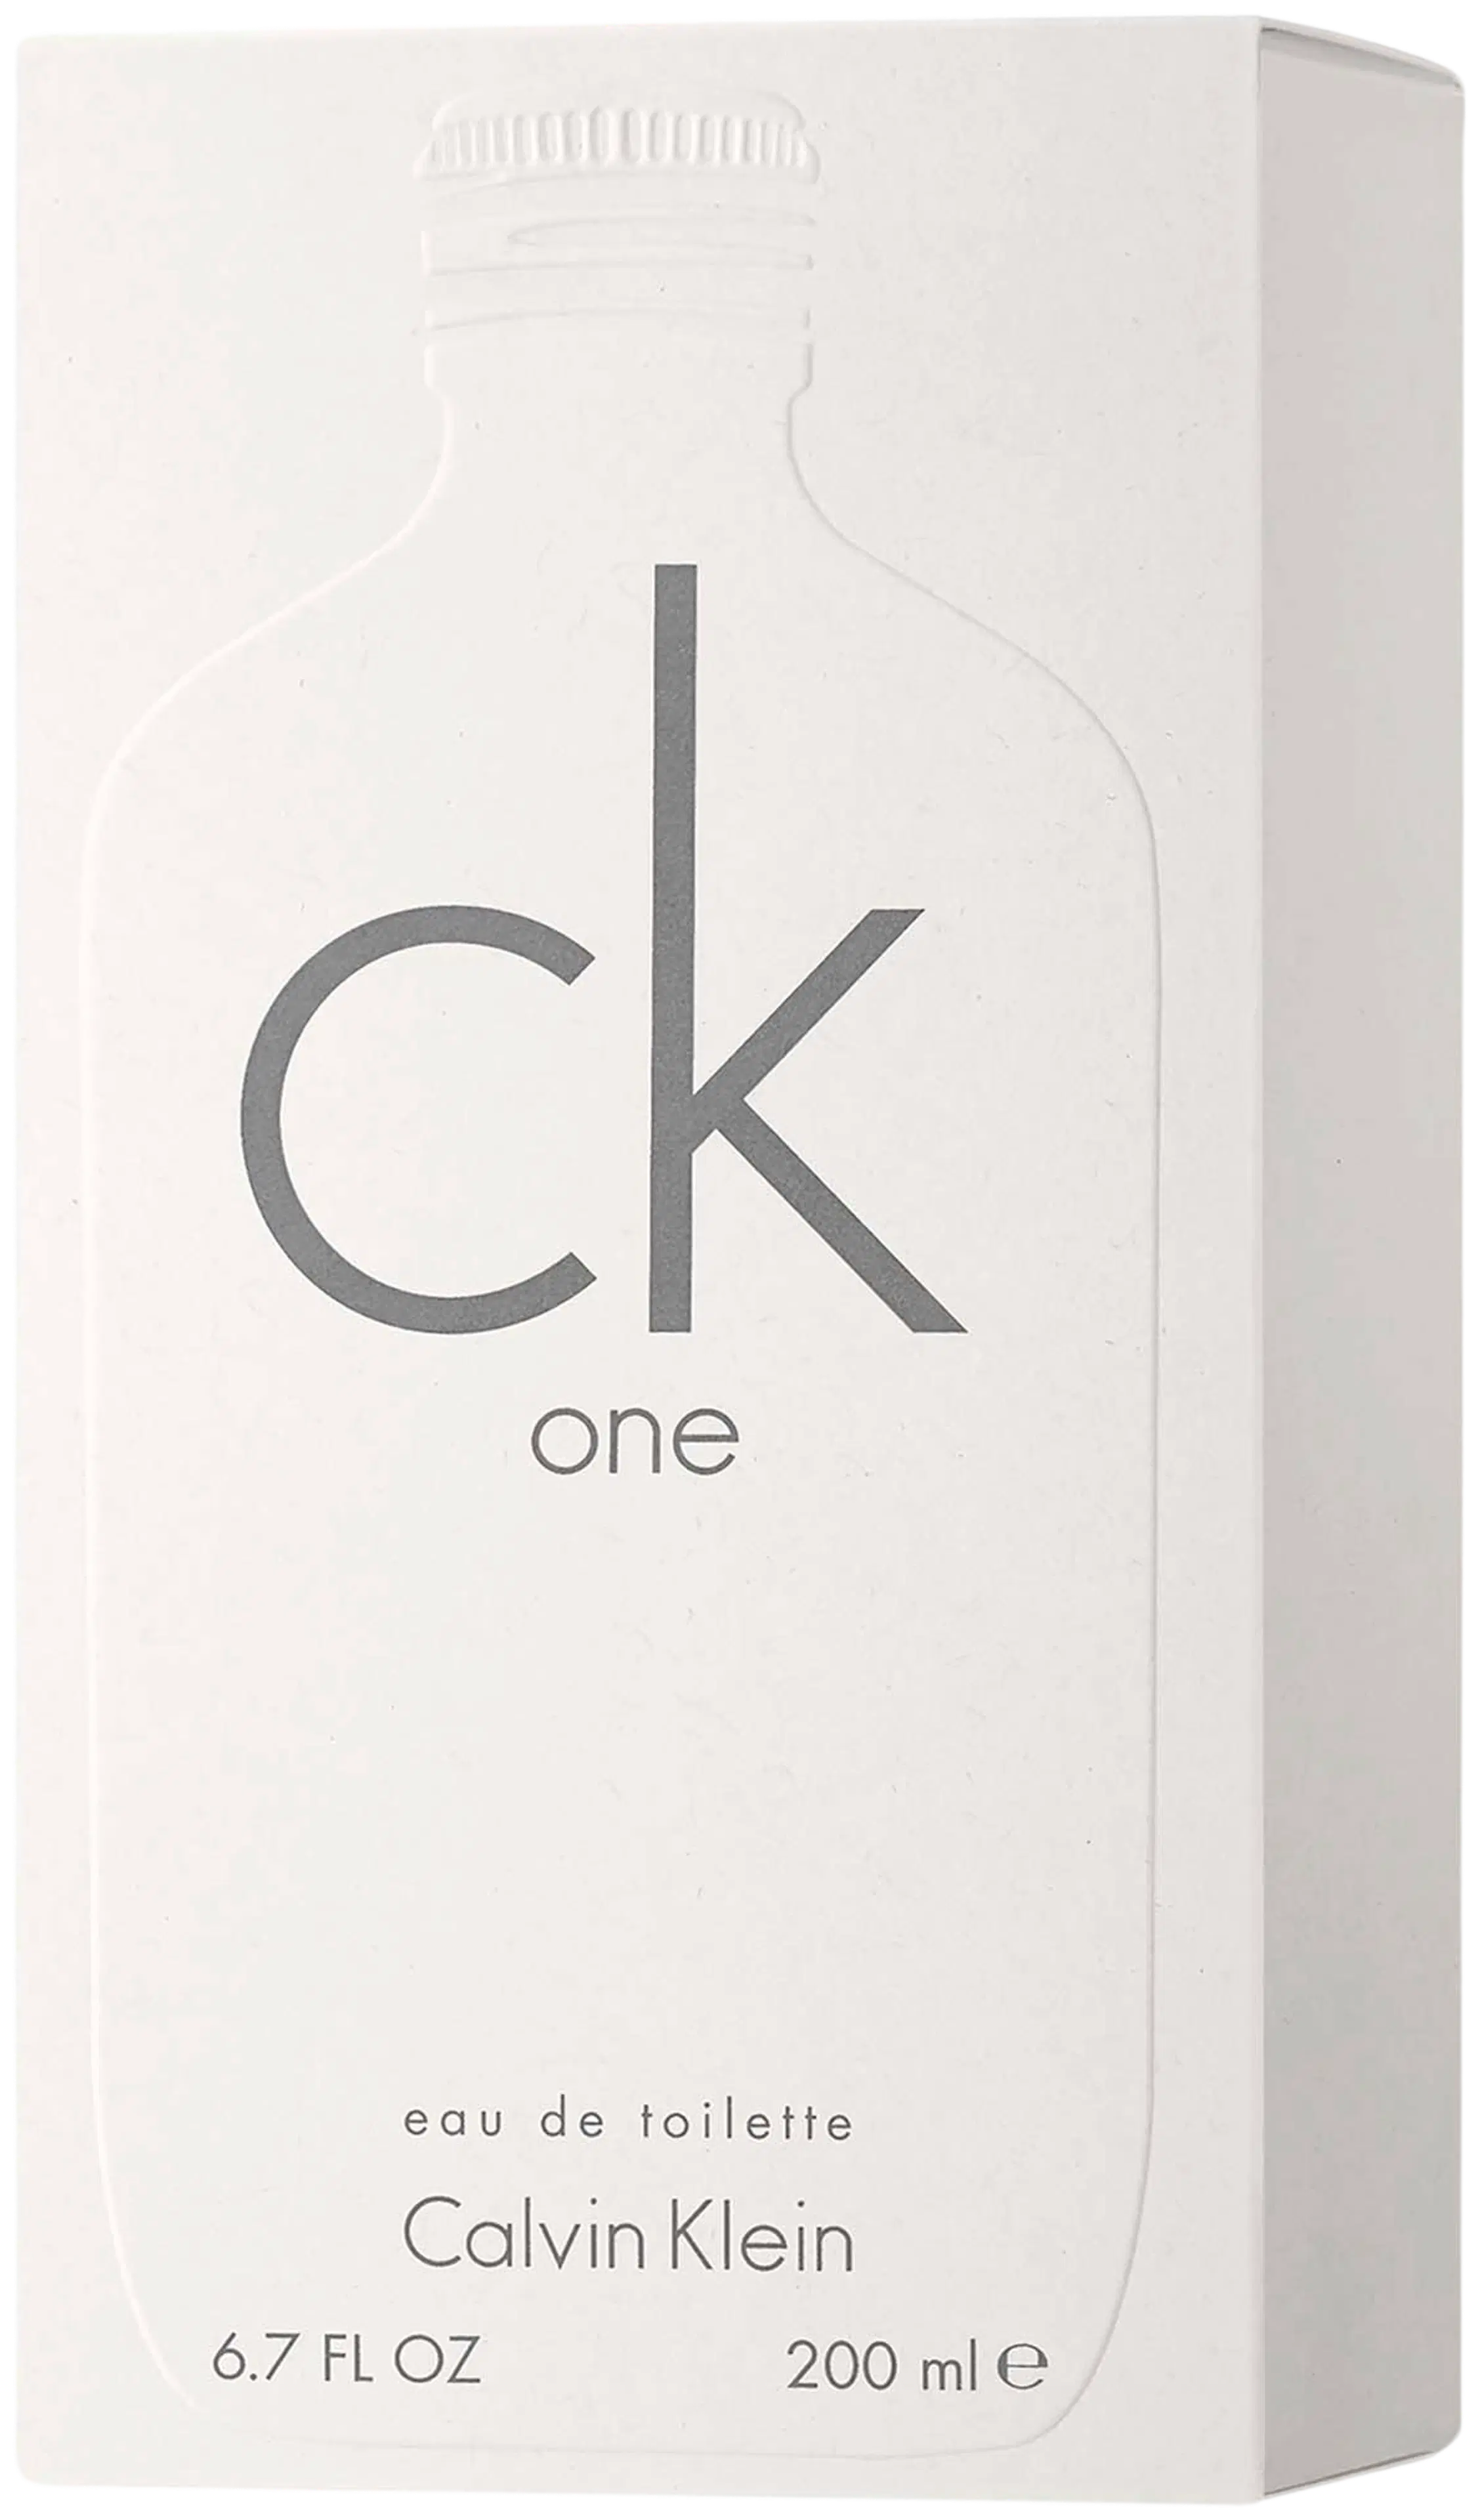 Calvin Klein CK One EdT tuoksu 100 ml